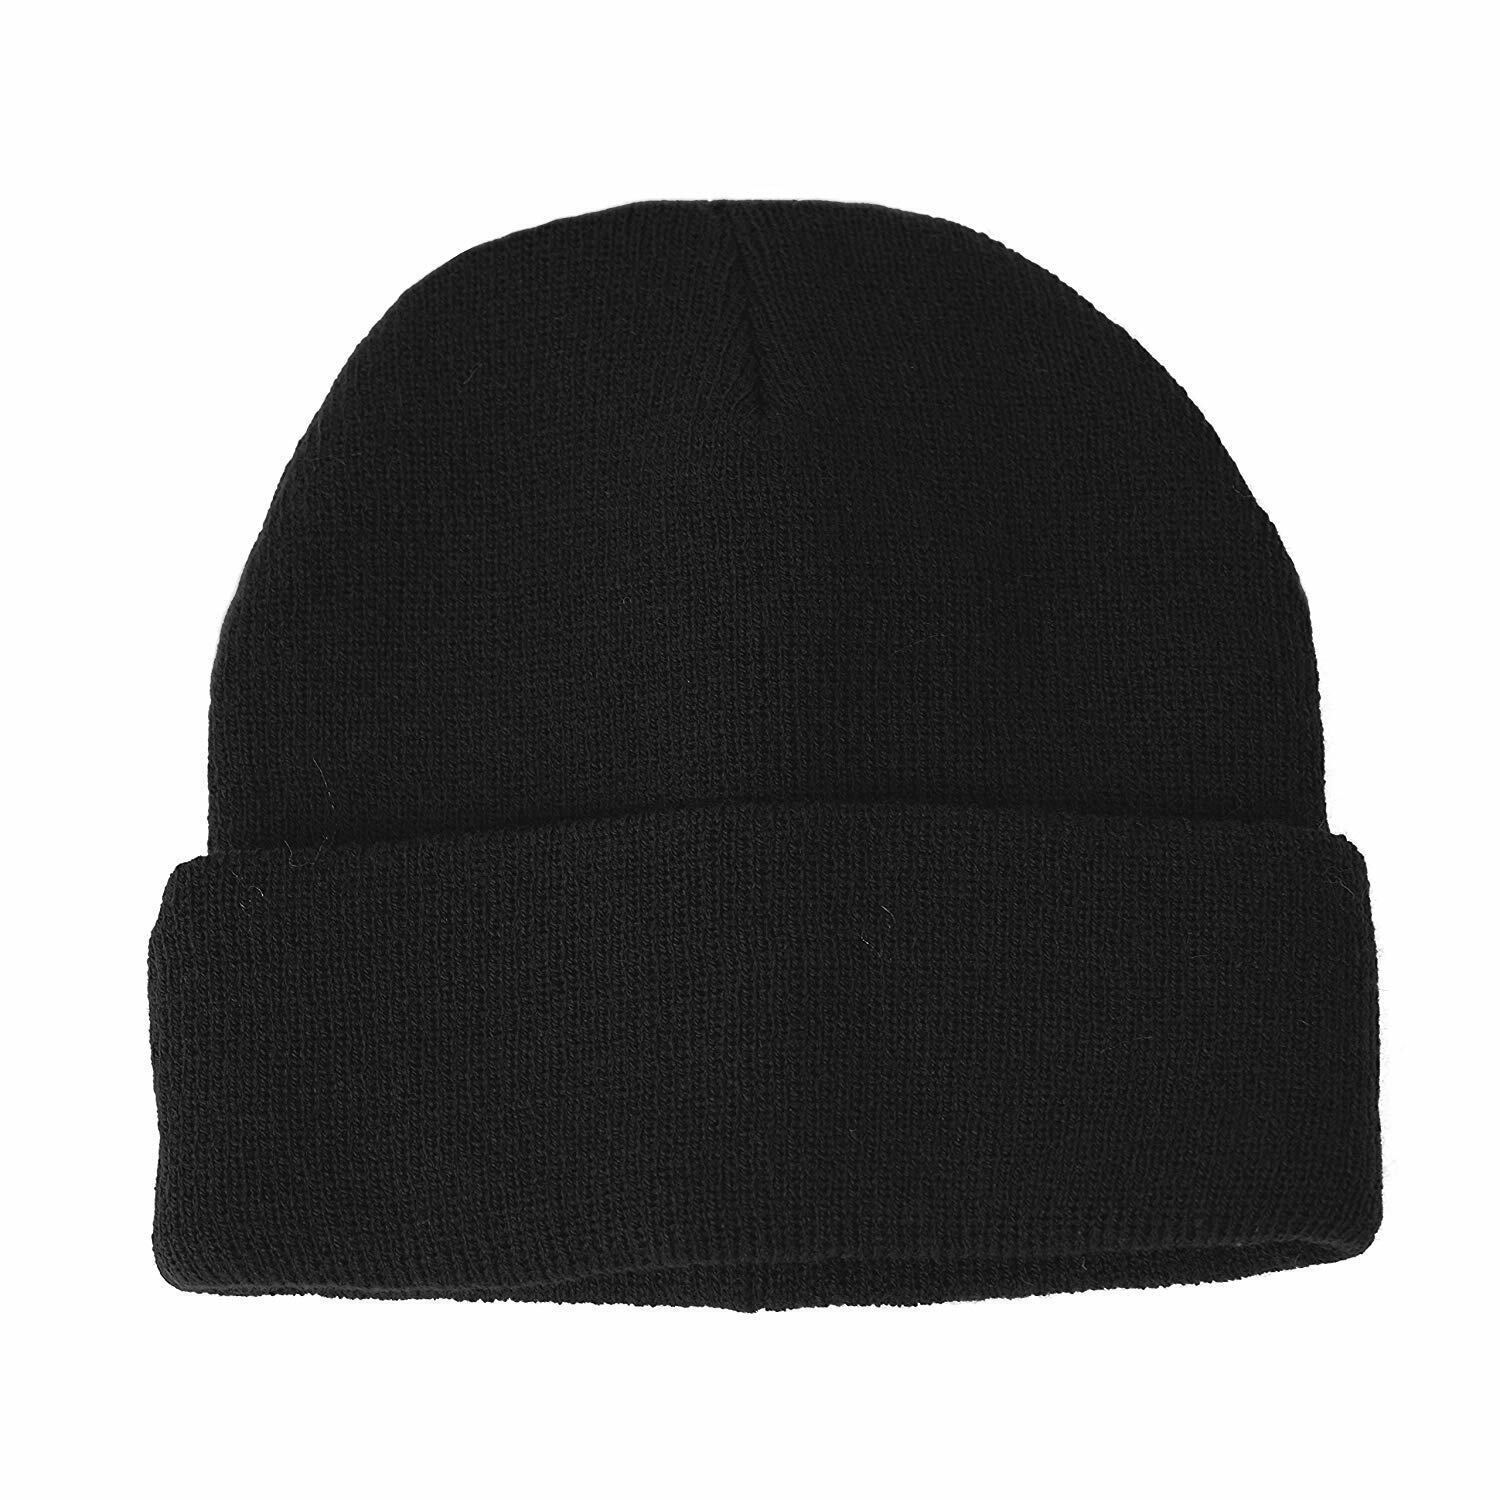 Fine Knit Turn Up Beanie Warm Winter Hat Plain Ski Thermal - Black